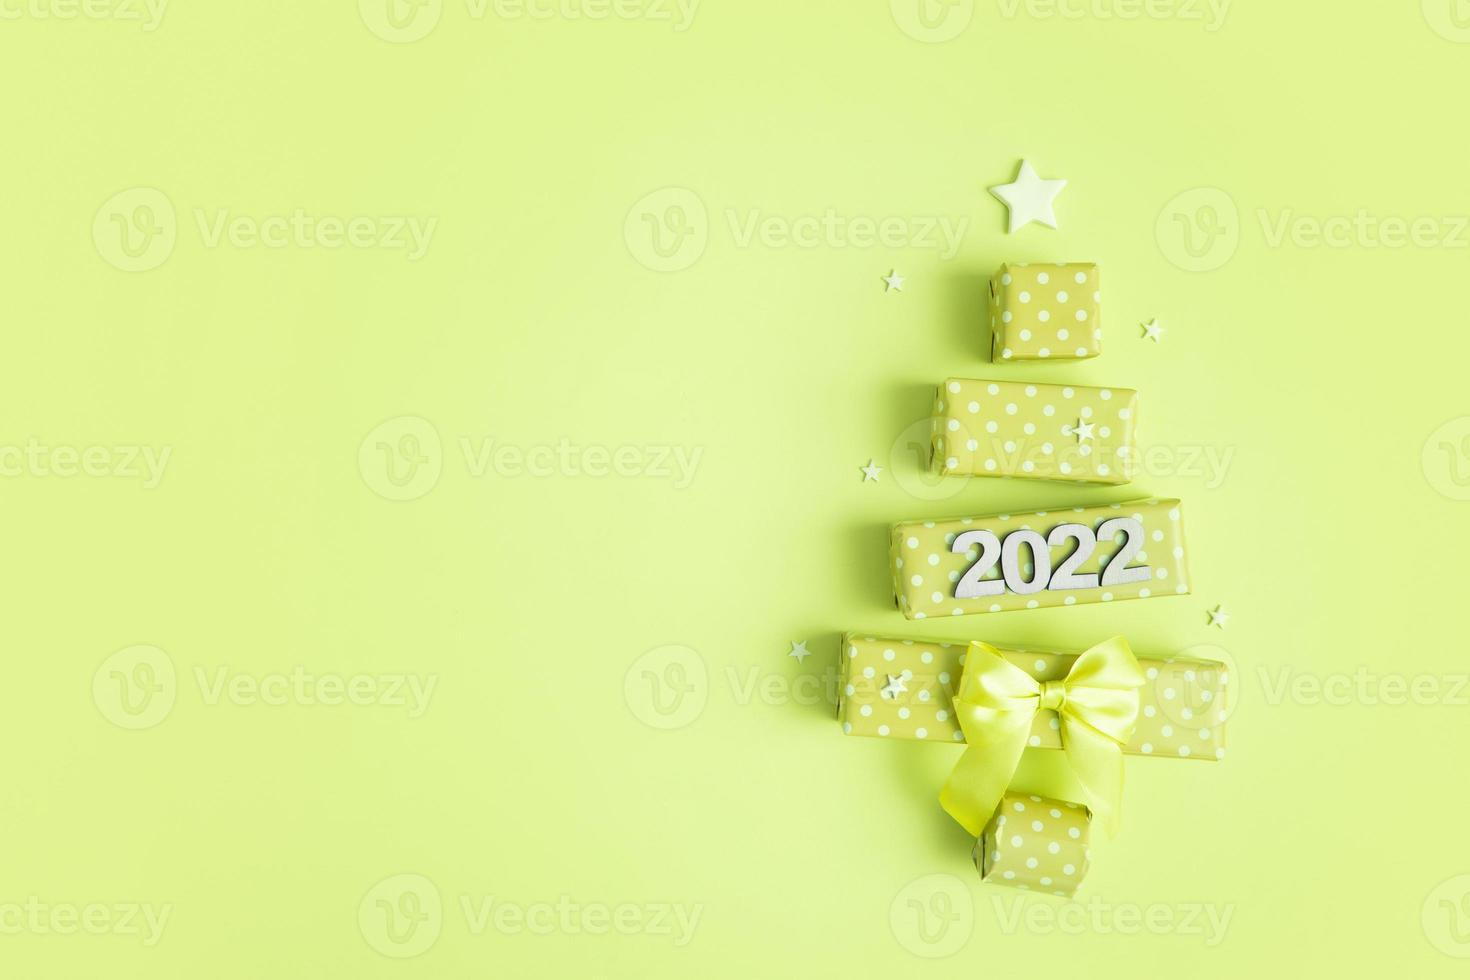 wenskaart met abstracte kerstboom gemaakt van geschenkdozen en nummers 2022 voor vrolijk kerstfeest en nieuwjaar foto